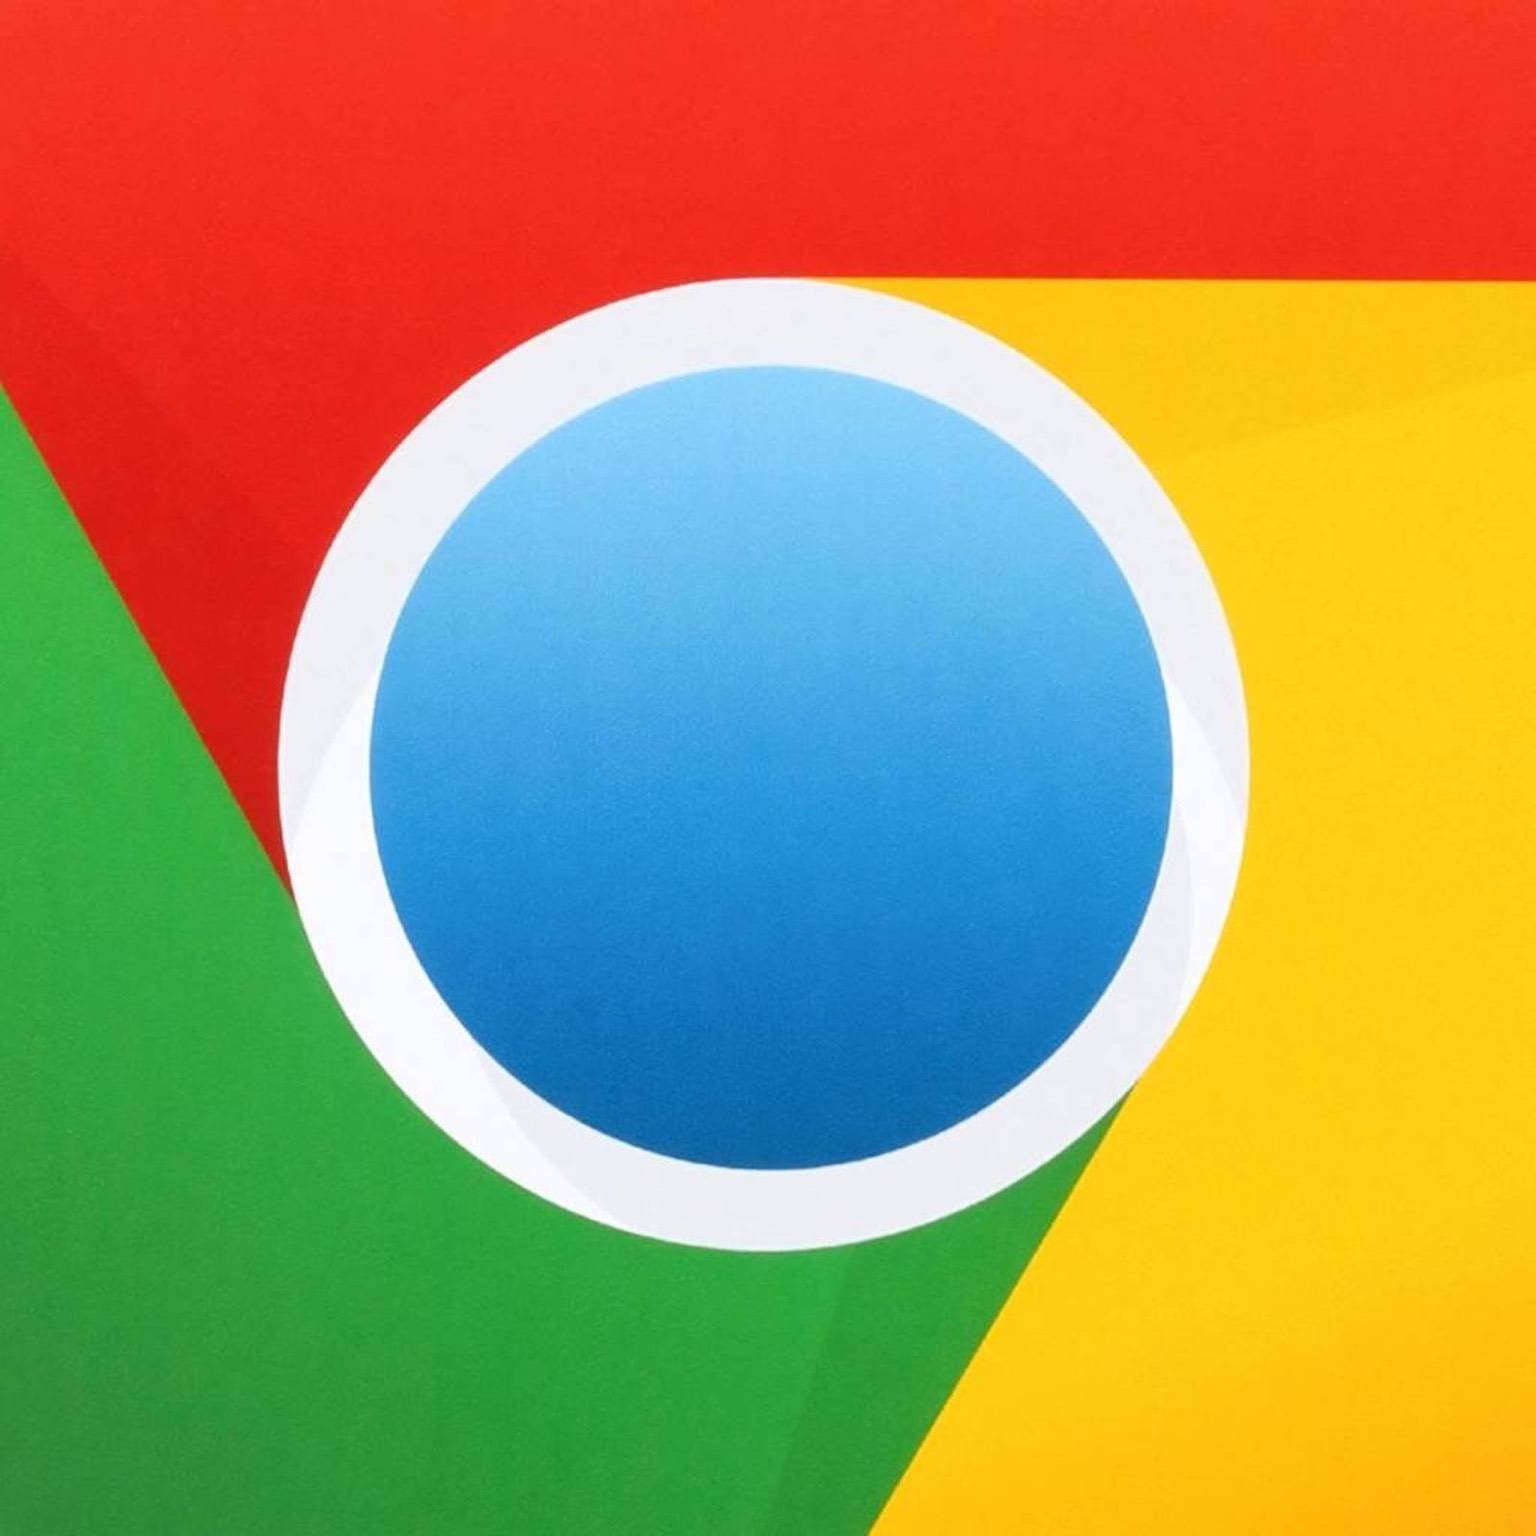 Immagine di Google Chrome, rilasciata la versione 80: ecco le novità